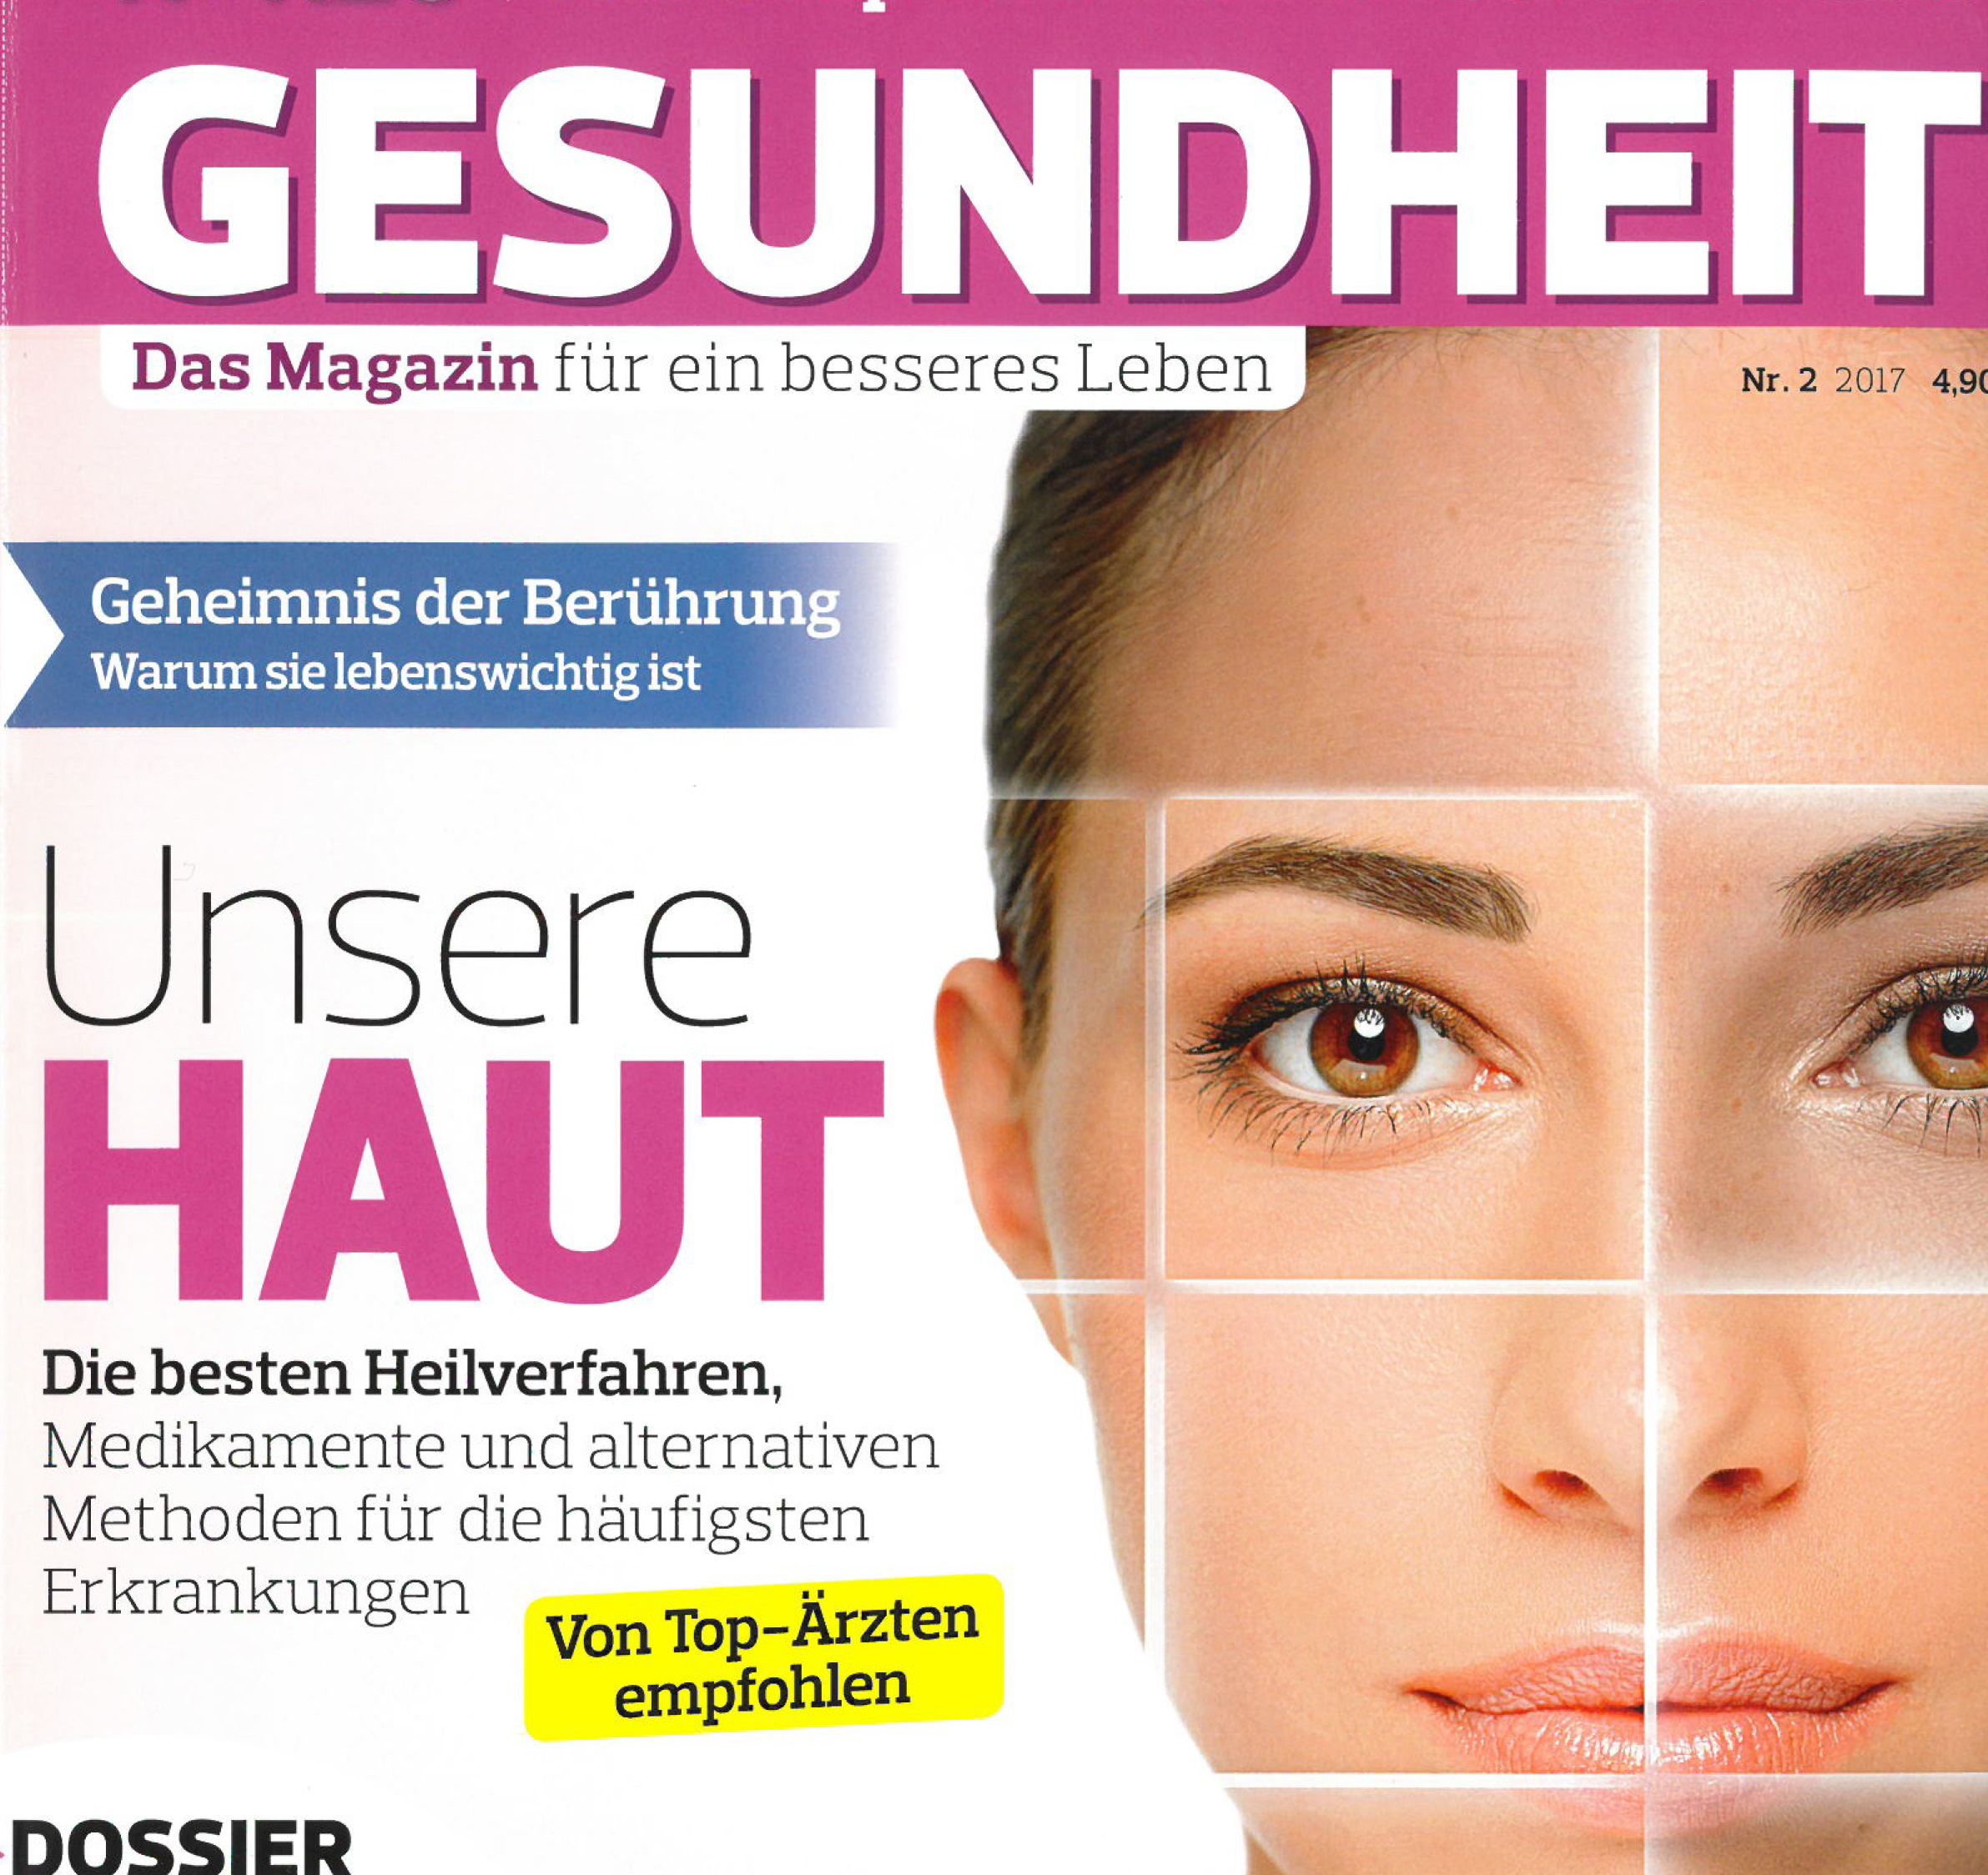 HoerzuGesundheit-Presse-Hautgesundheit-Ockenfels-Hautklinik-Hautkrebsprävention